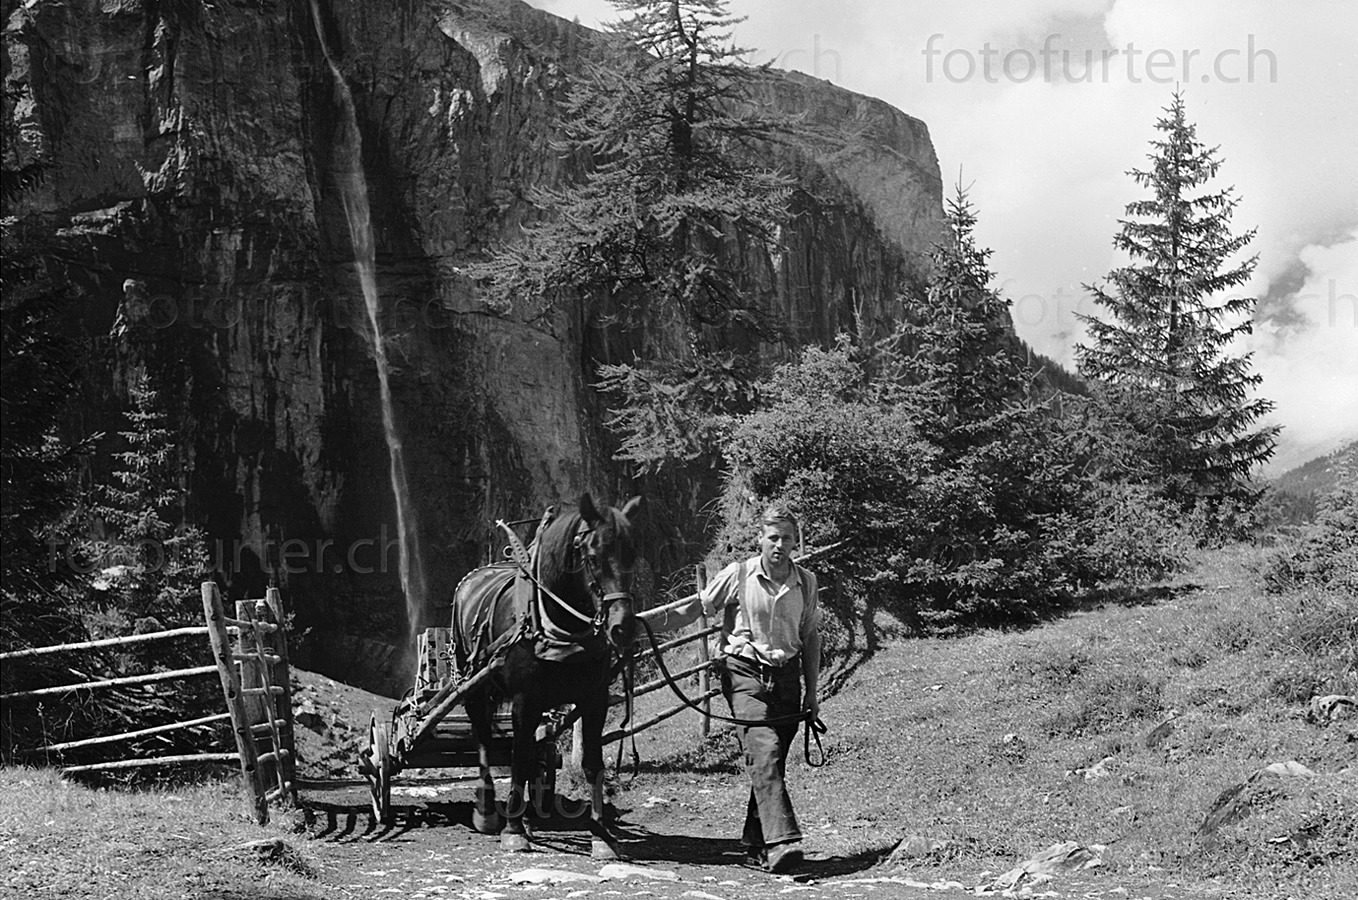 Pferd neben Bauer vor Wasserfall im Berner Oberland, historisches Archiv von Foto Furter